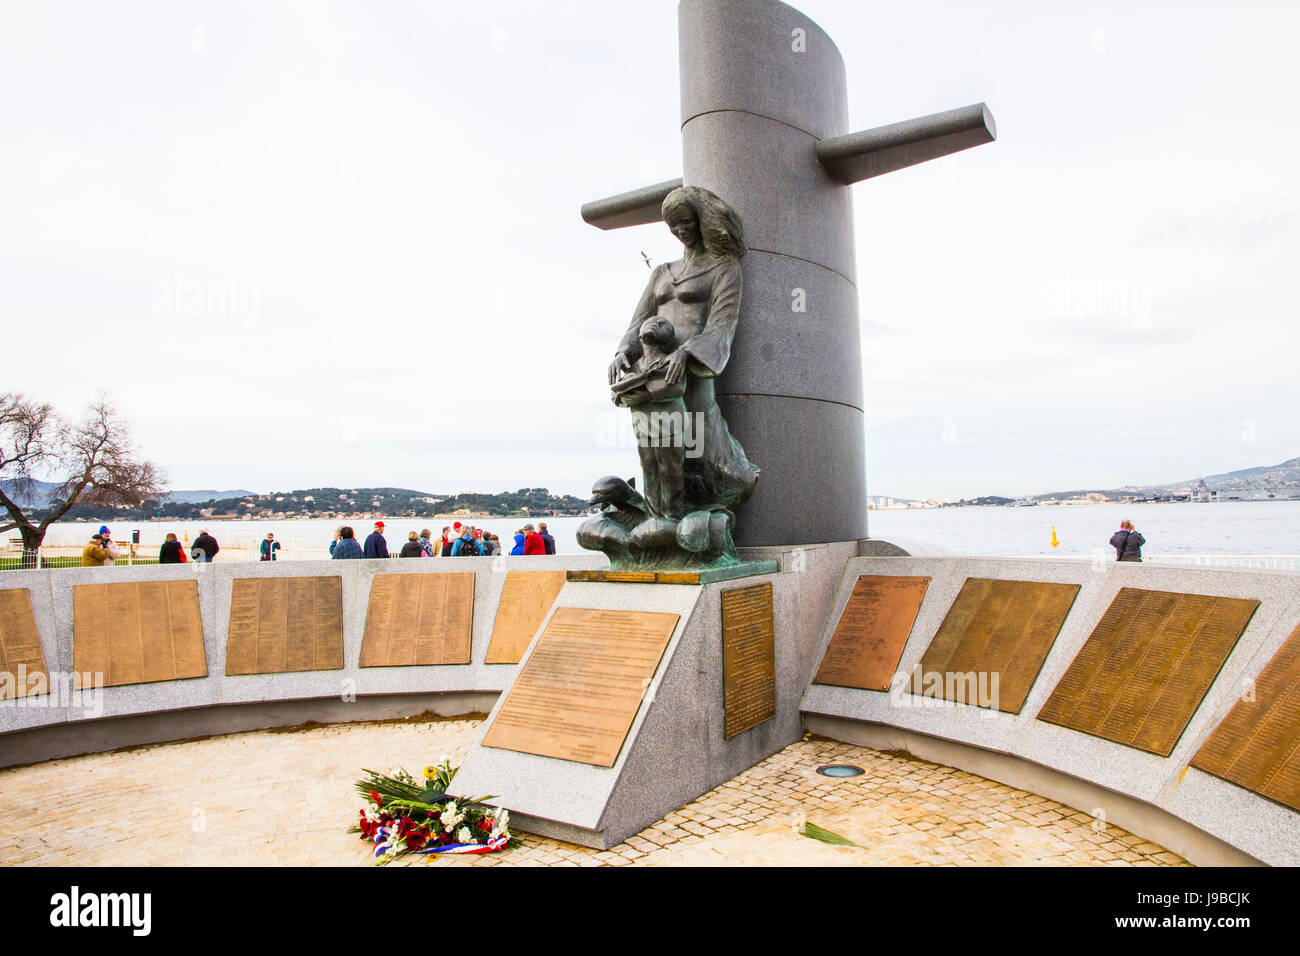 Ce mémorial dans le port de Toulon rend hommage à 57 membres de l'équipage du sous-marin français Eridis que mystérieusement disparu dans la mer Méditerranée. Banque D'Images